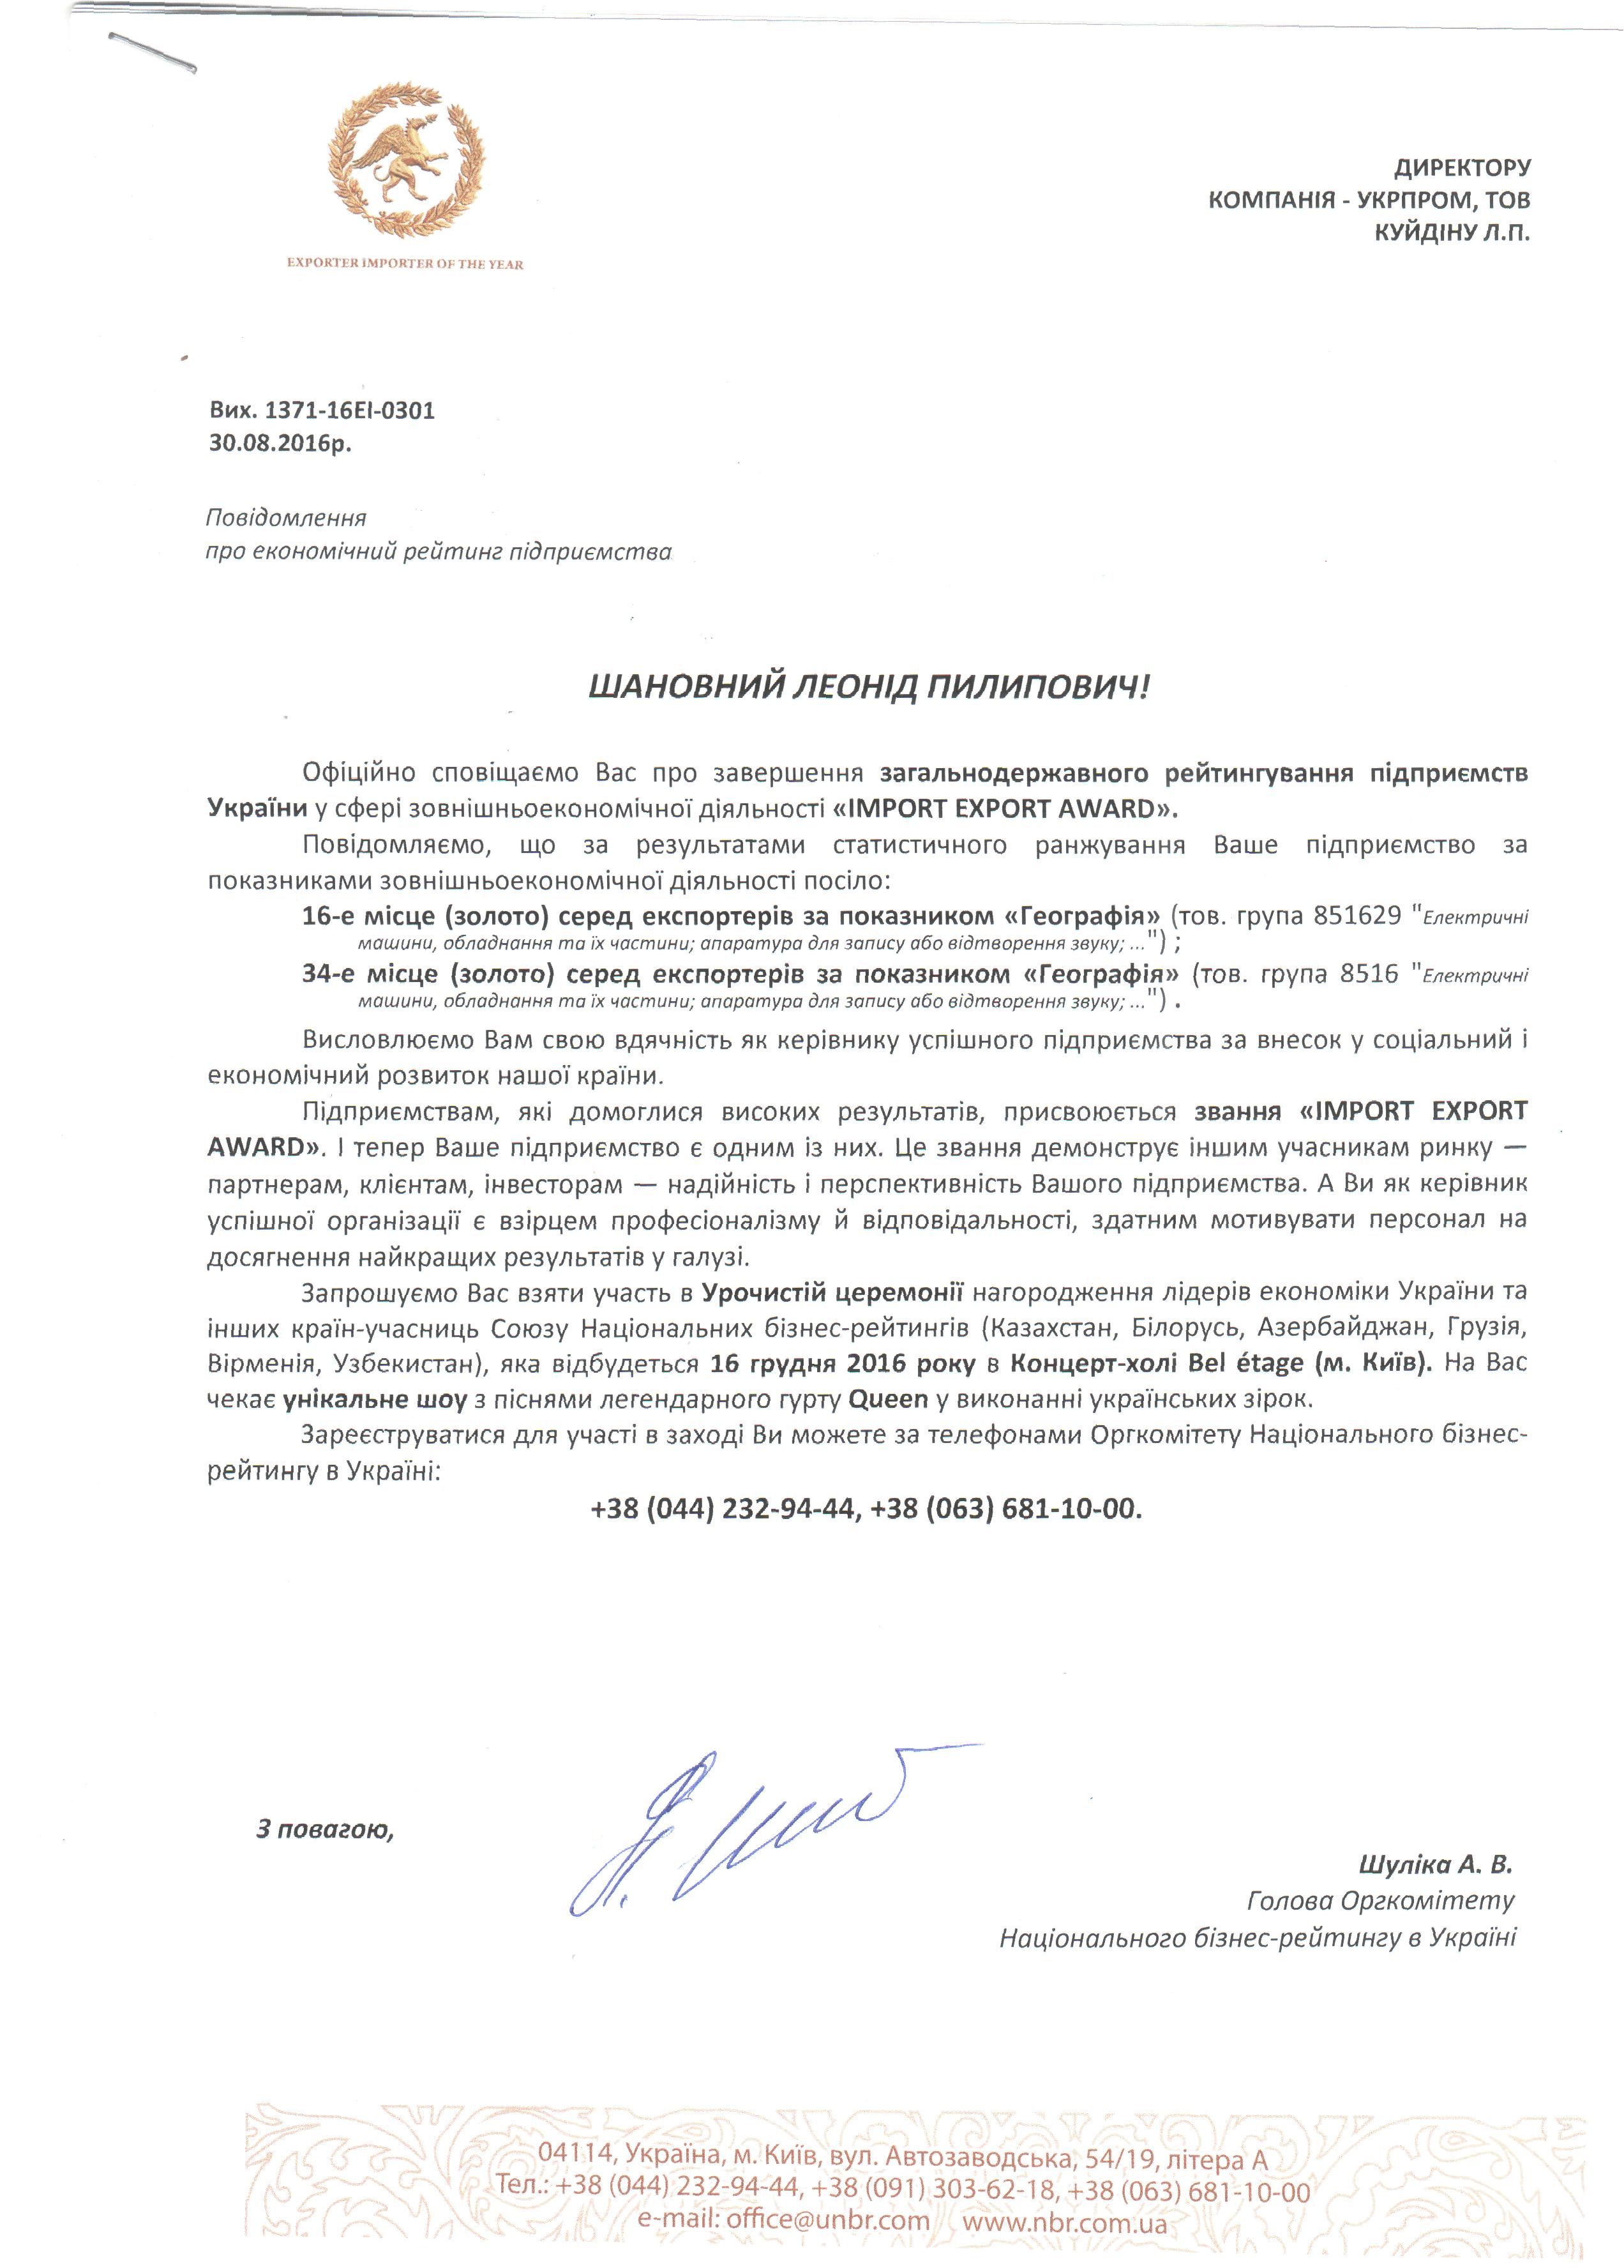 Компания Укрпром, производитель инфракрасных обогревателей ТМ Теплов получила награждена золотом